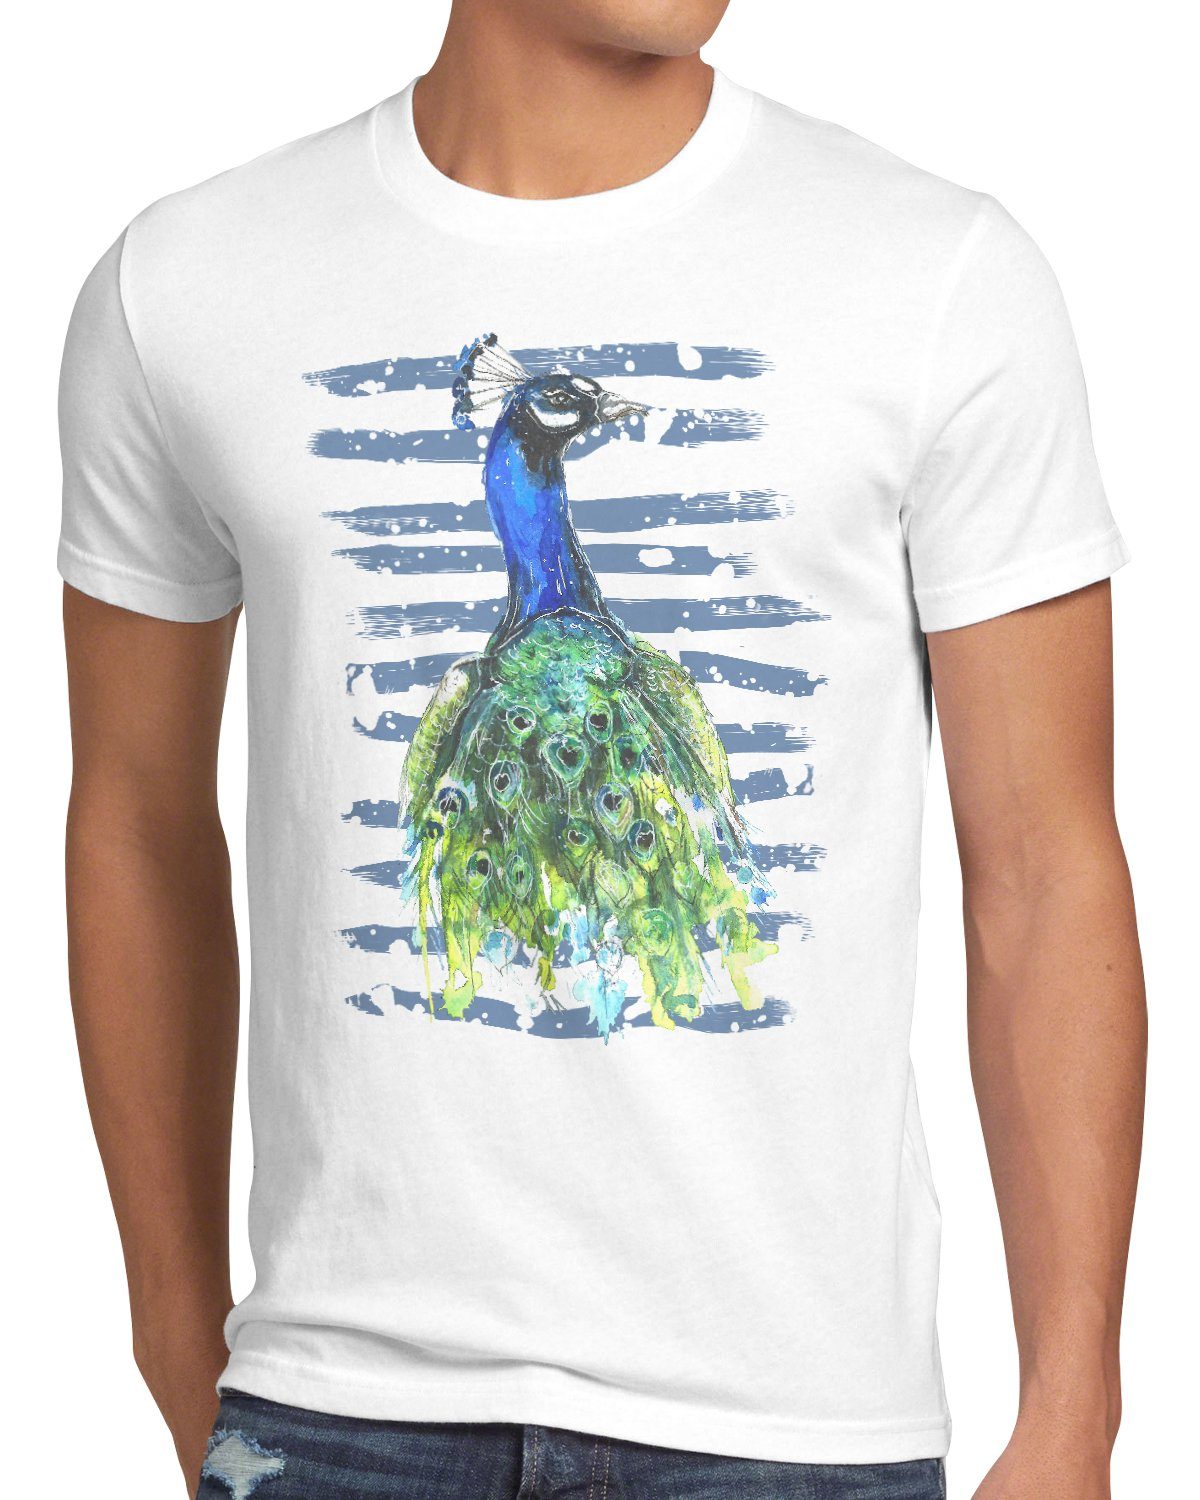 schmuck vogelfreund Herren Pfauenfeder regenwald style3 T-Shirt Print-Shirt